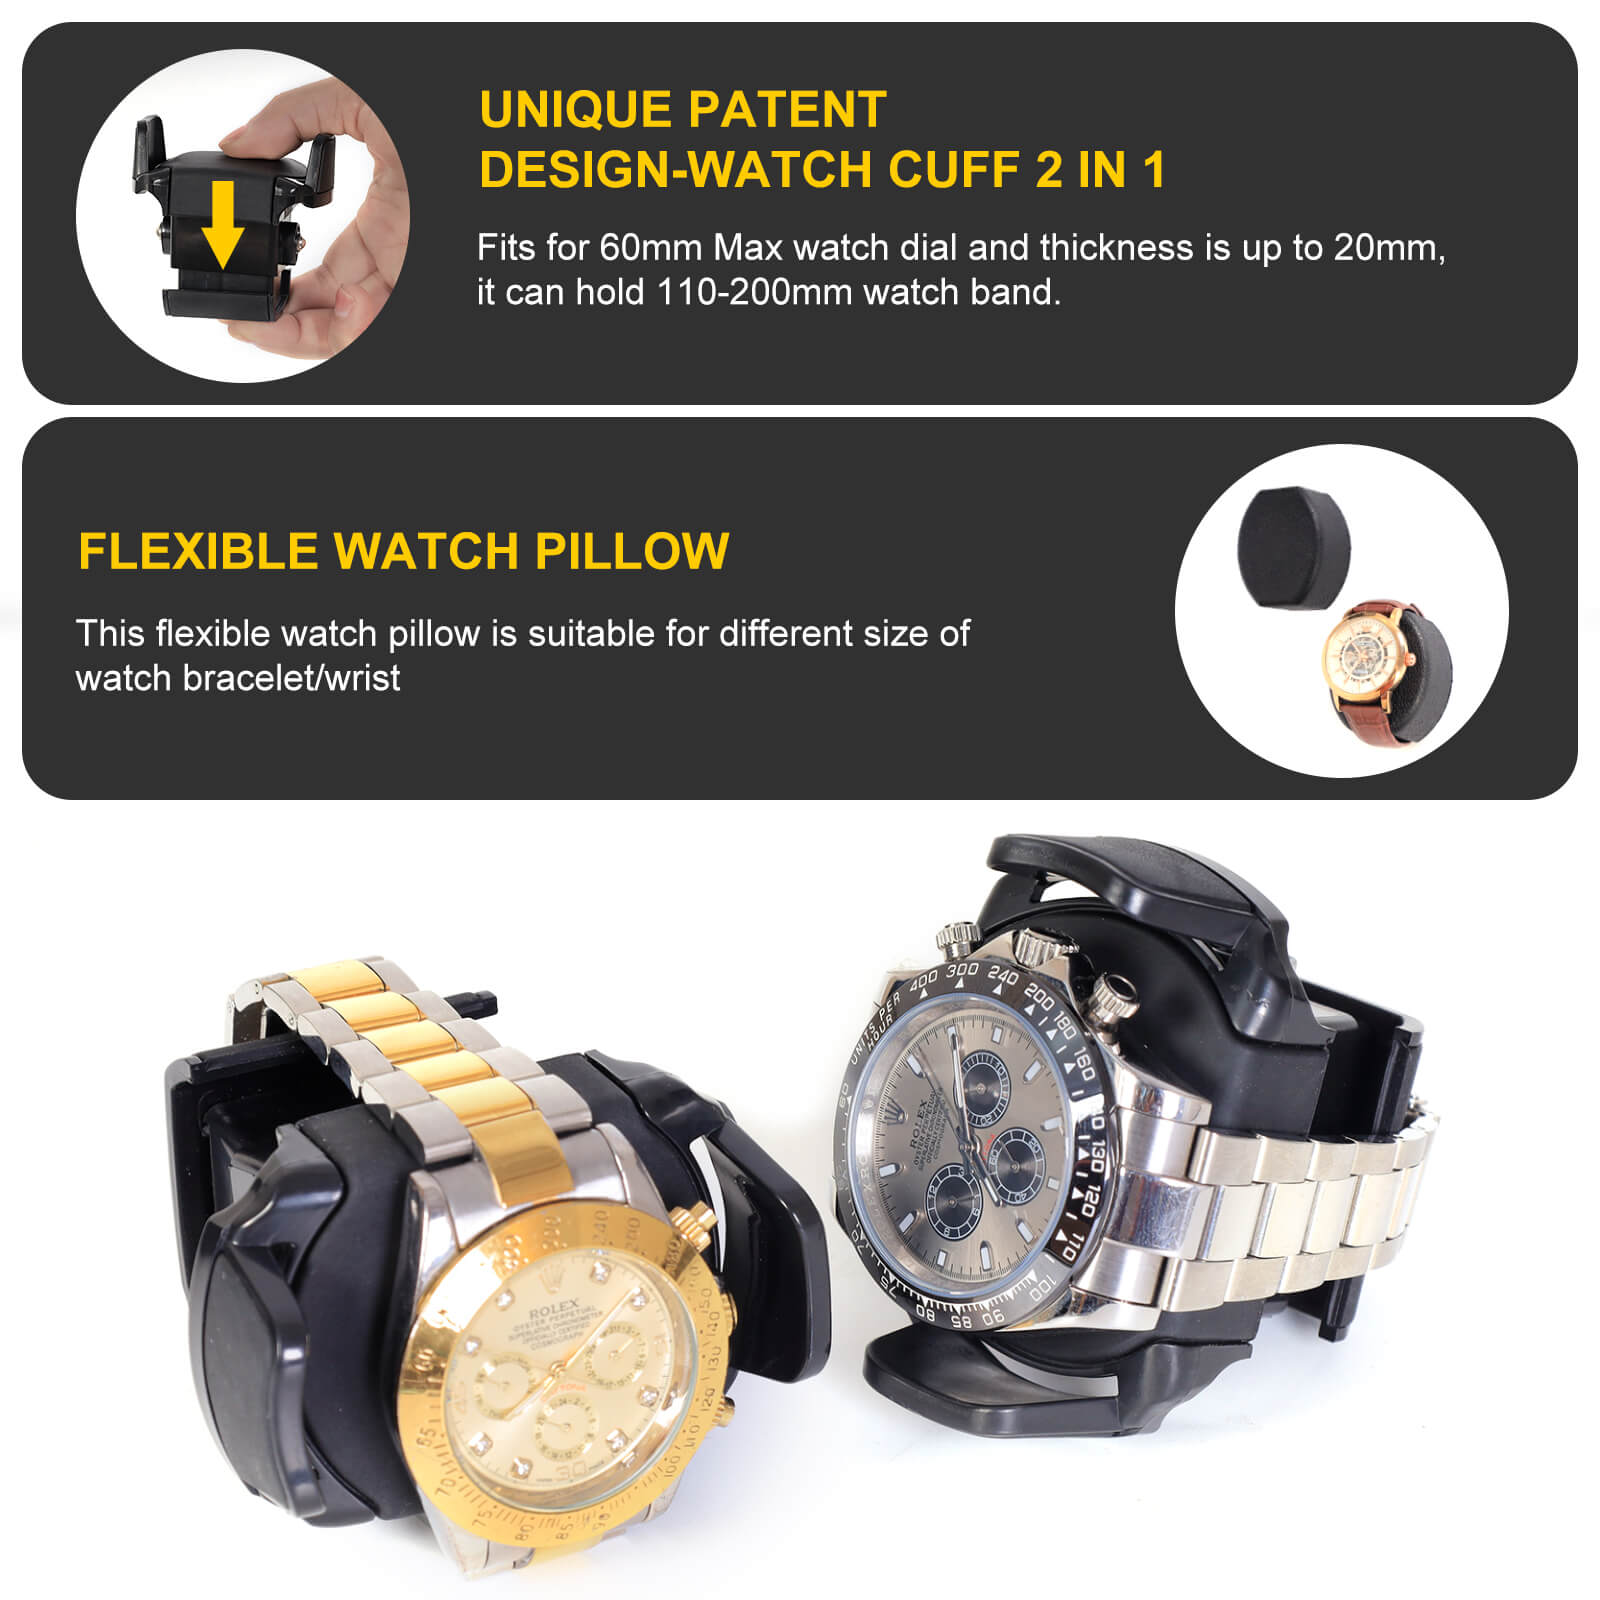 Remontoirs de montres compacts pour 2 montres avec 3 étuis de rangement supplémentaires - Rouge